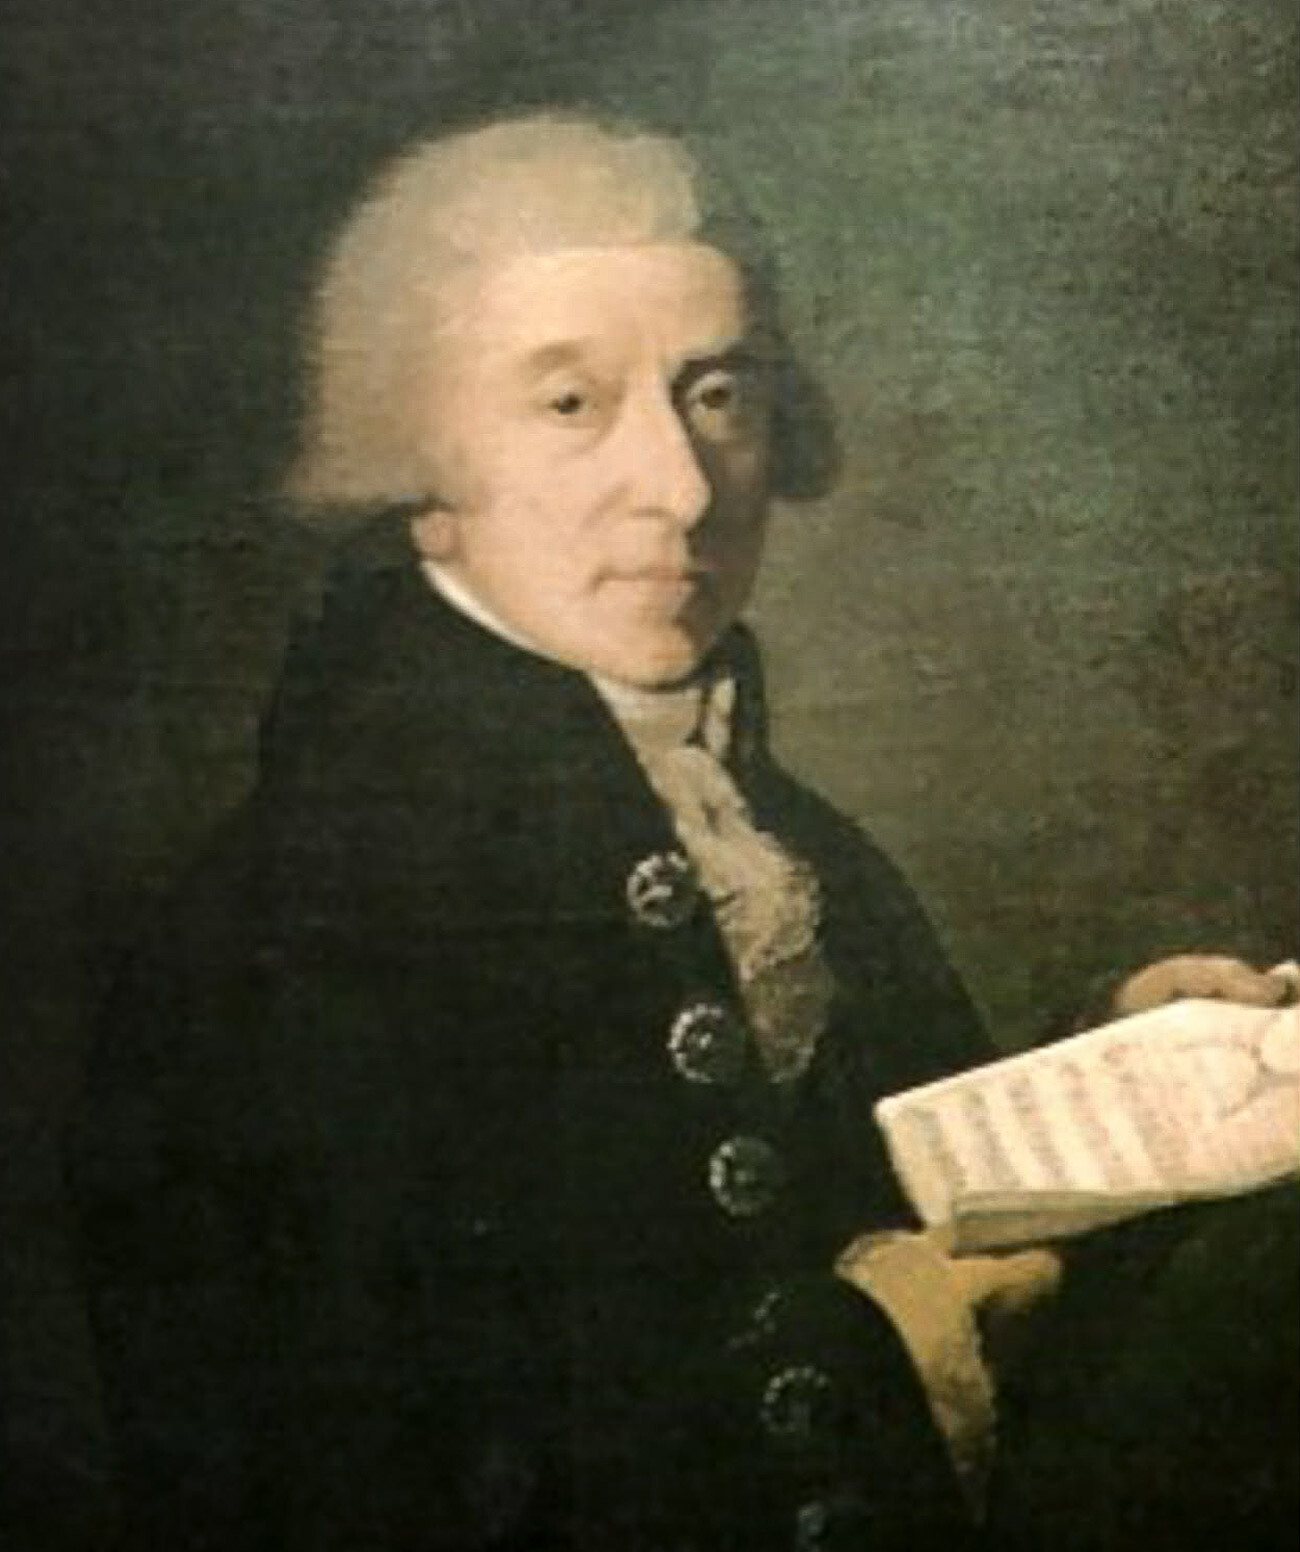 Portret italijanskega skladatelja Giuseppeja Sartija (1729-1802), ki ga je naslikal Salvatore Tonci, verjetno med svojim bivanjem v Sankt Peterburgu, leta 1798